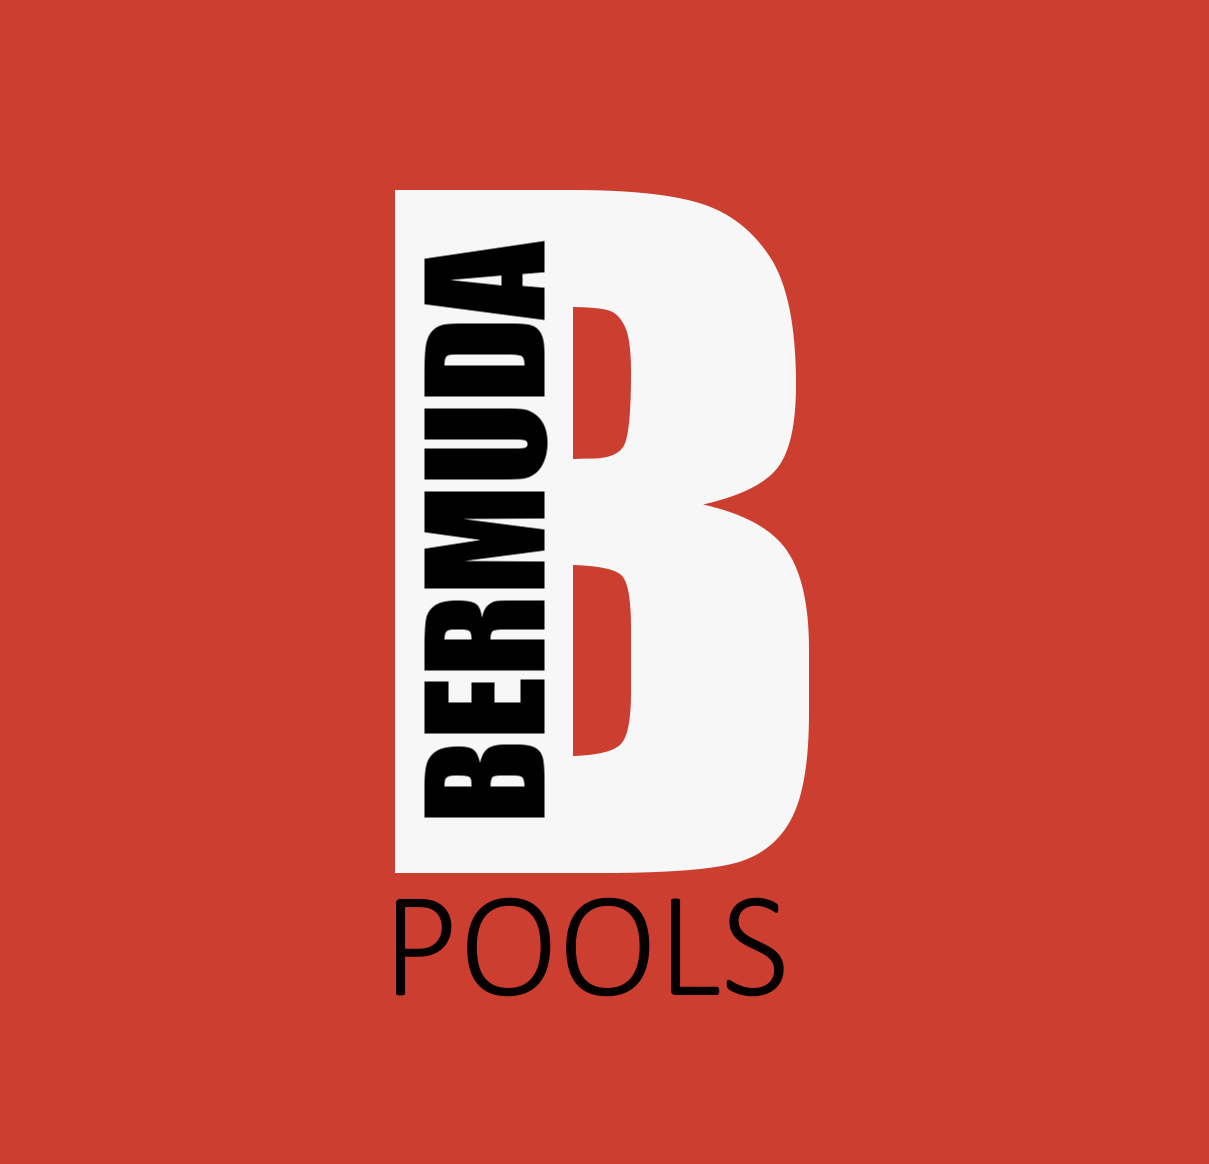 Bermuda Pools